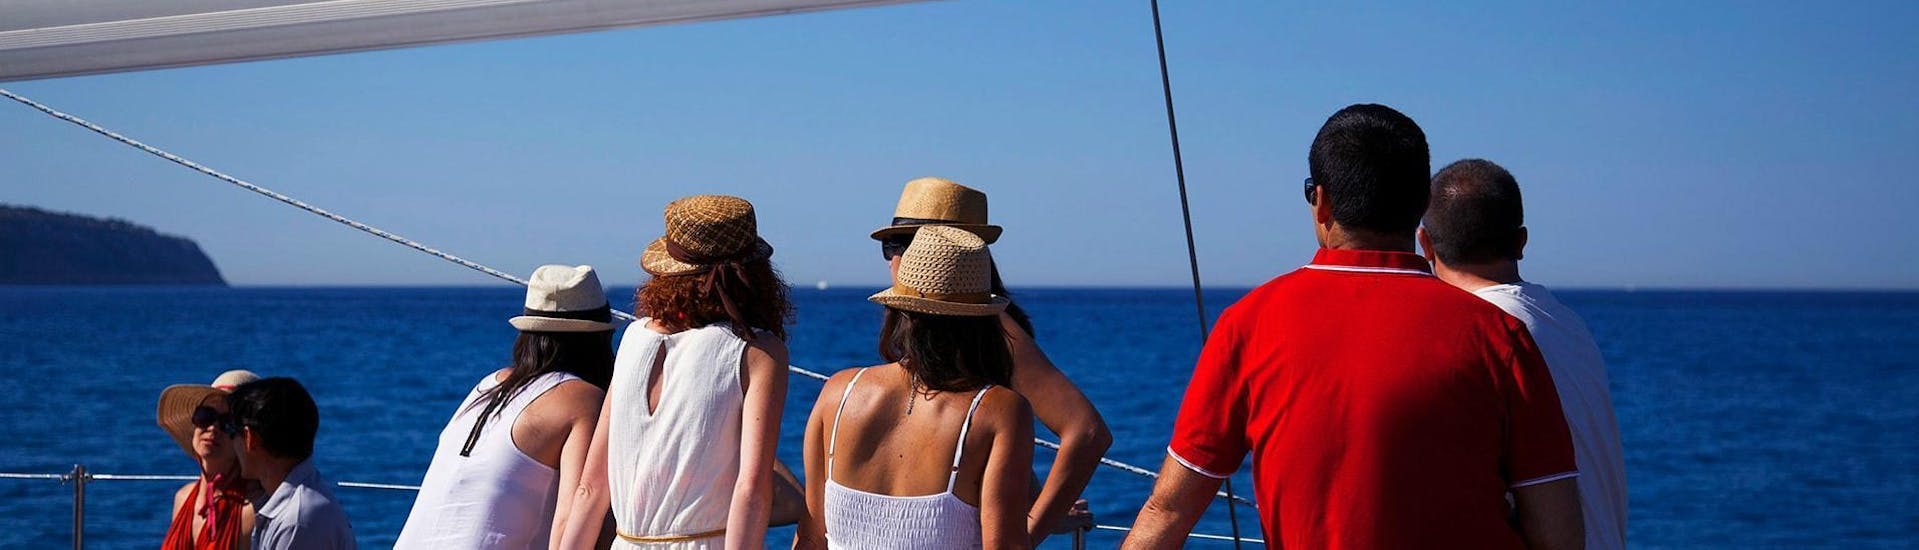 Personas disfrutando en la embarcación durante una Excursión Privada en Catamarán en la Bahía de Palma con Oasis Catamarán Mallorca.